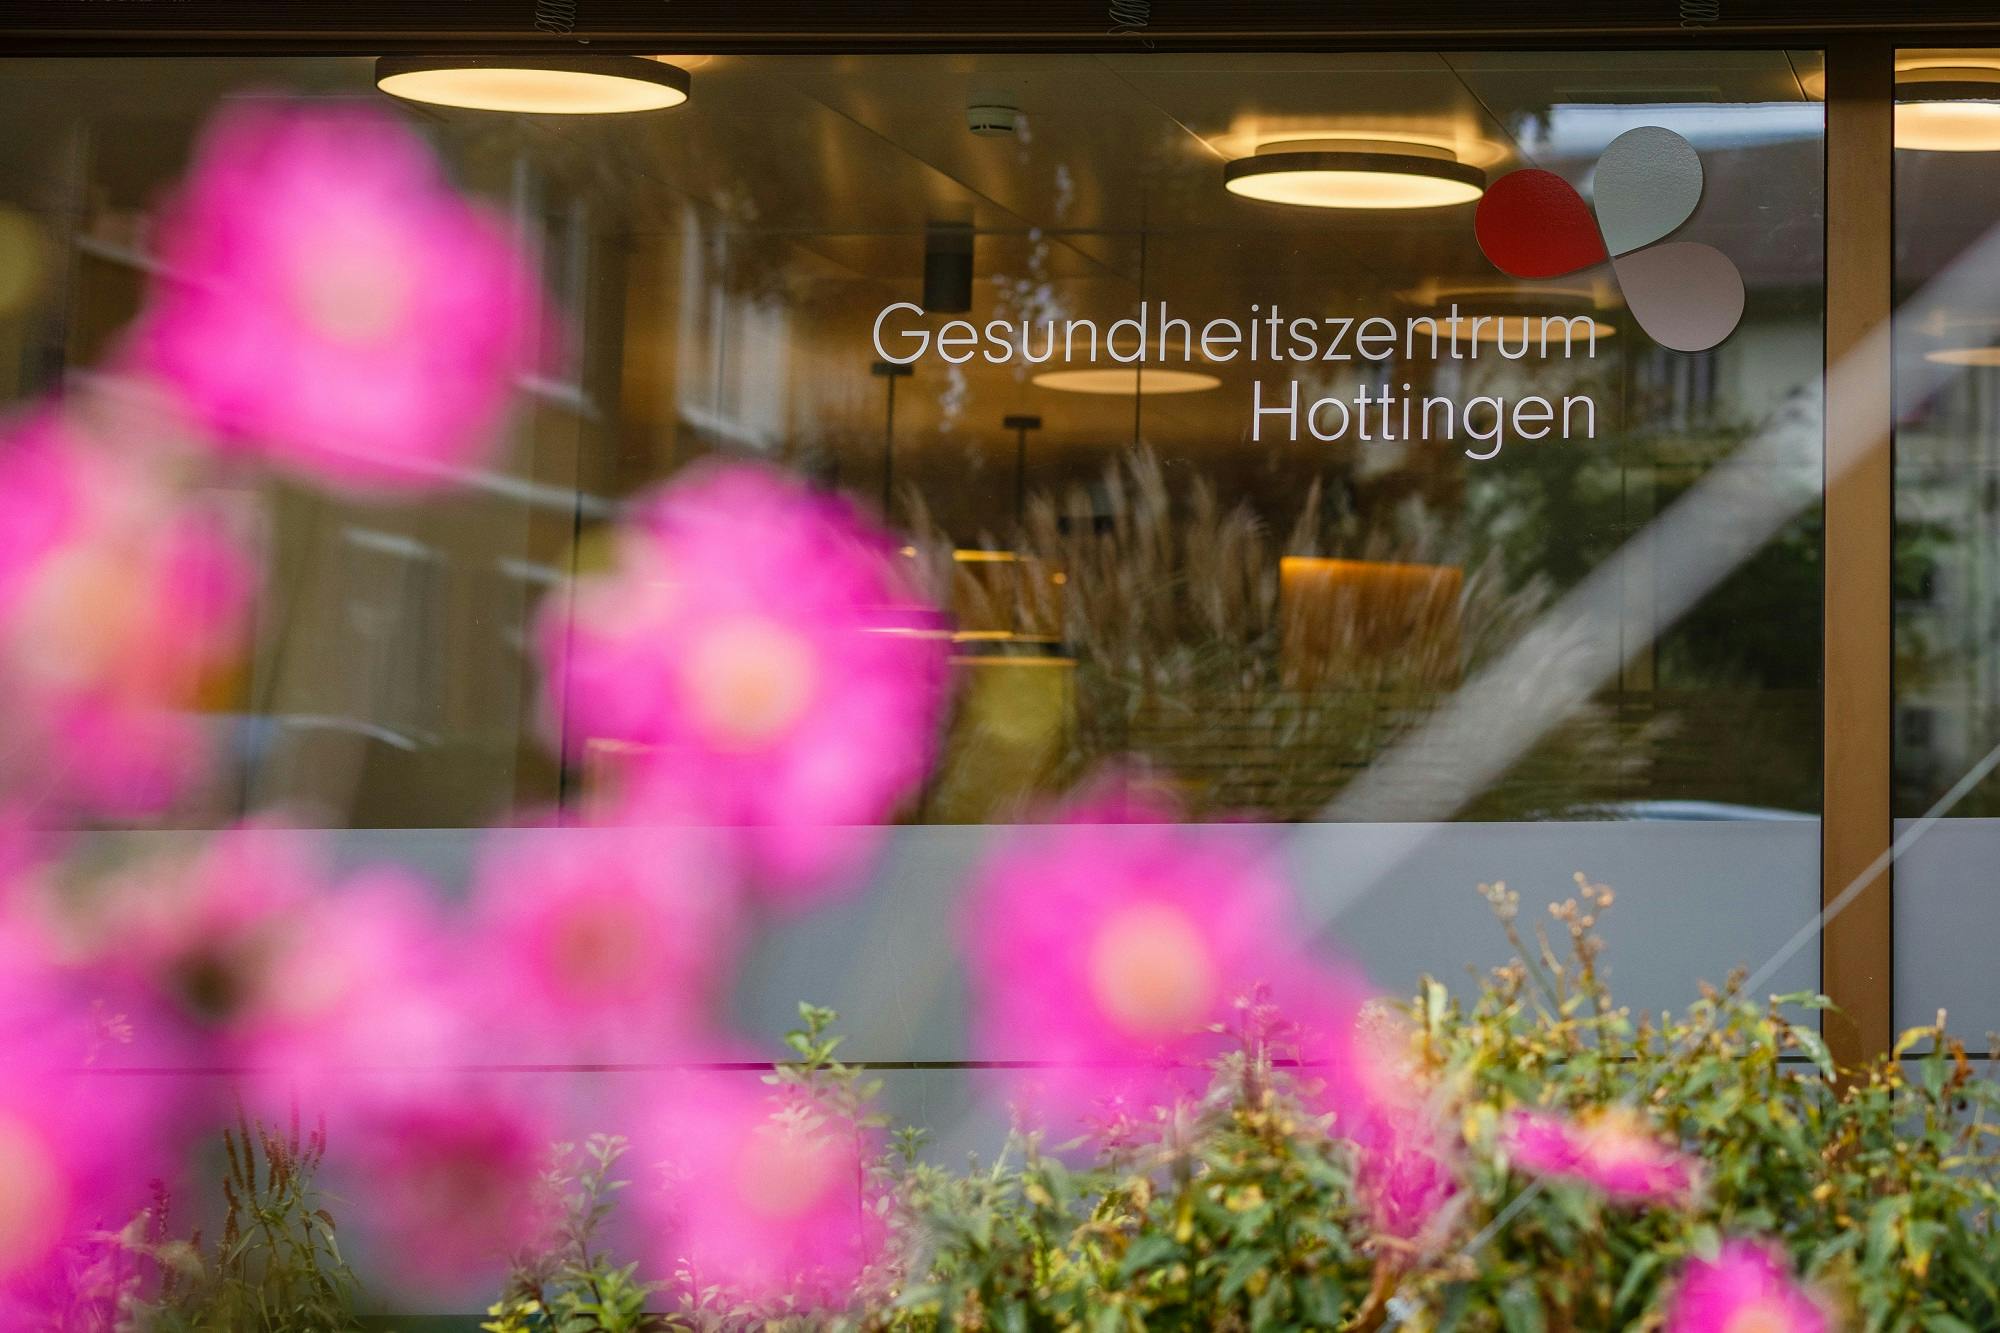 Schaufenster des Gesundheitszentrums Hottingen mit unscharfen rosa Blumen im Vordergrund.